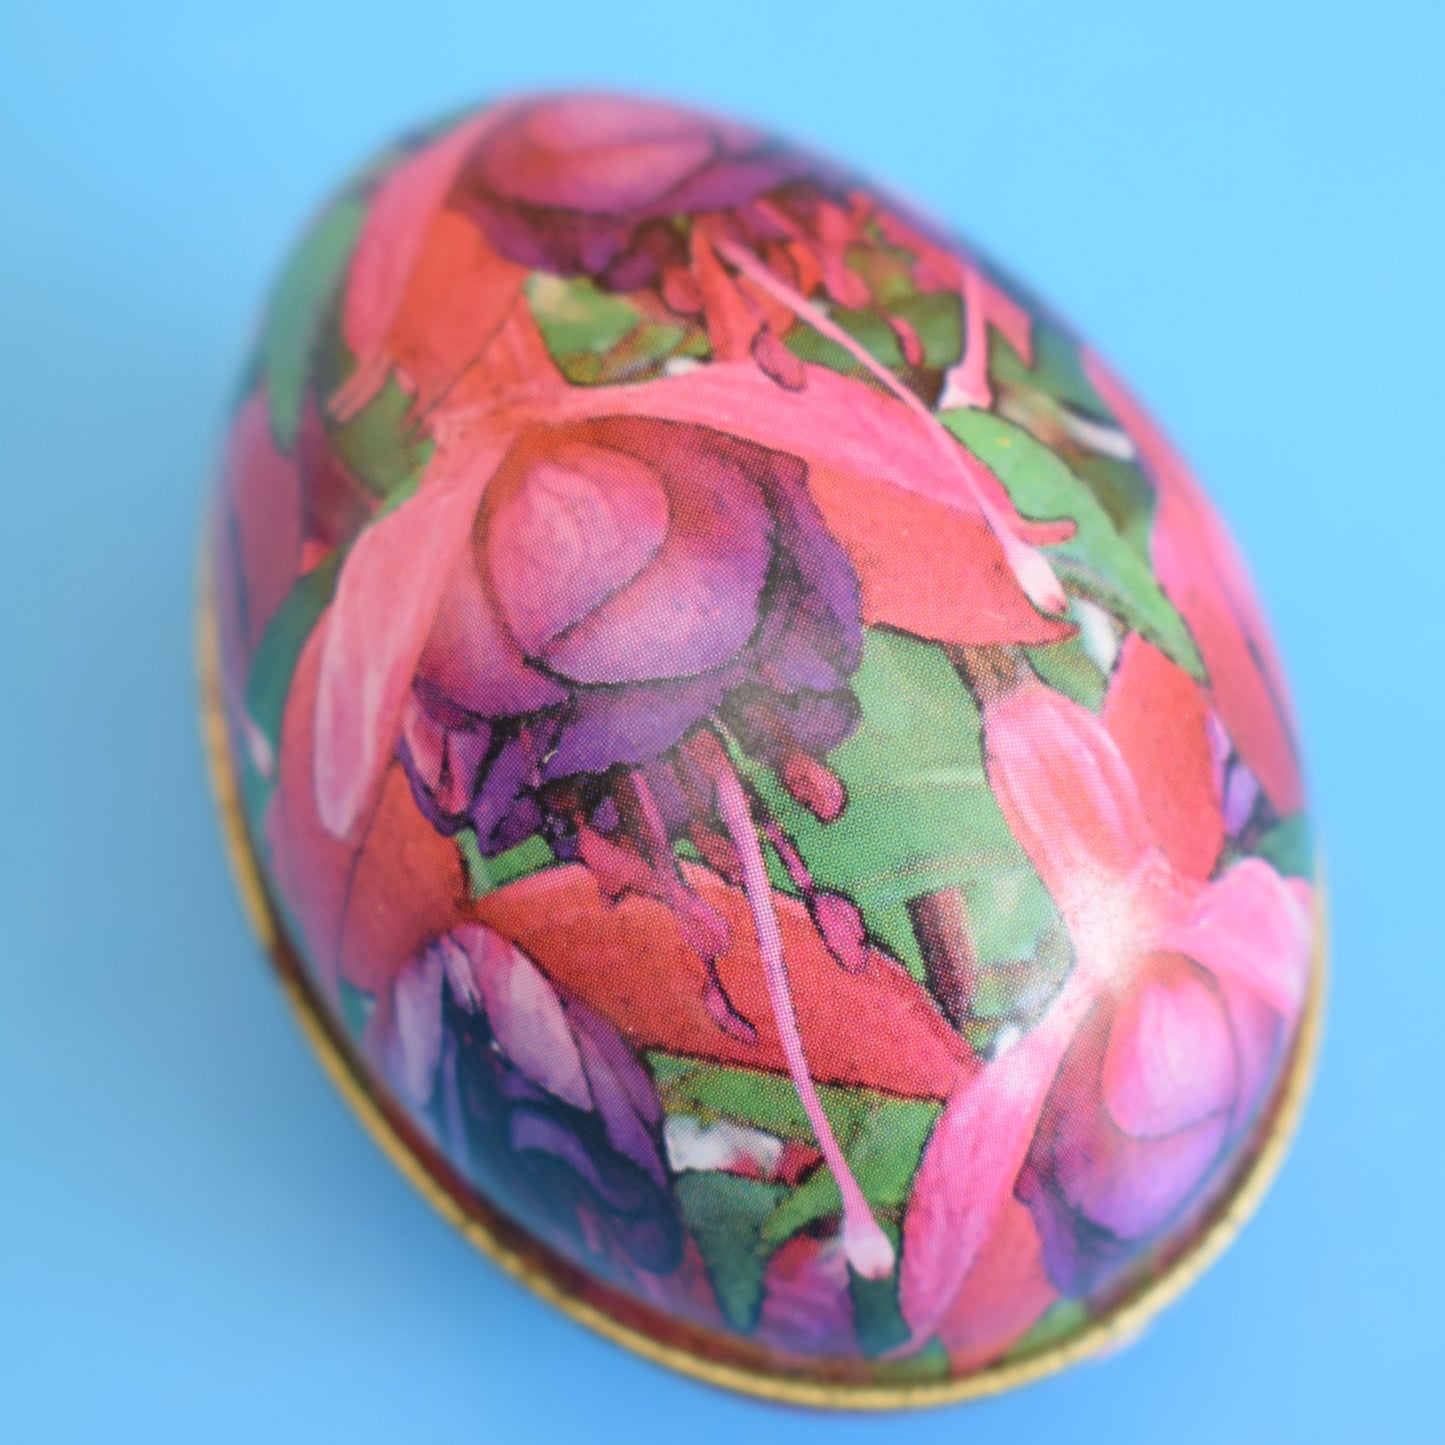 Vintage 1980s Egg Shaped Tins / Soap - Floral